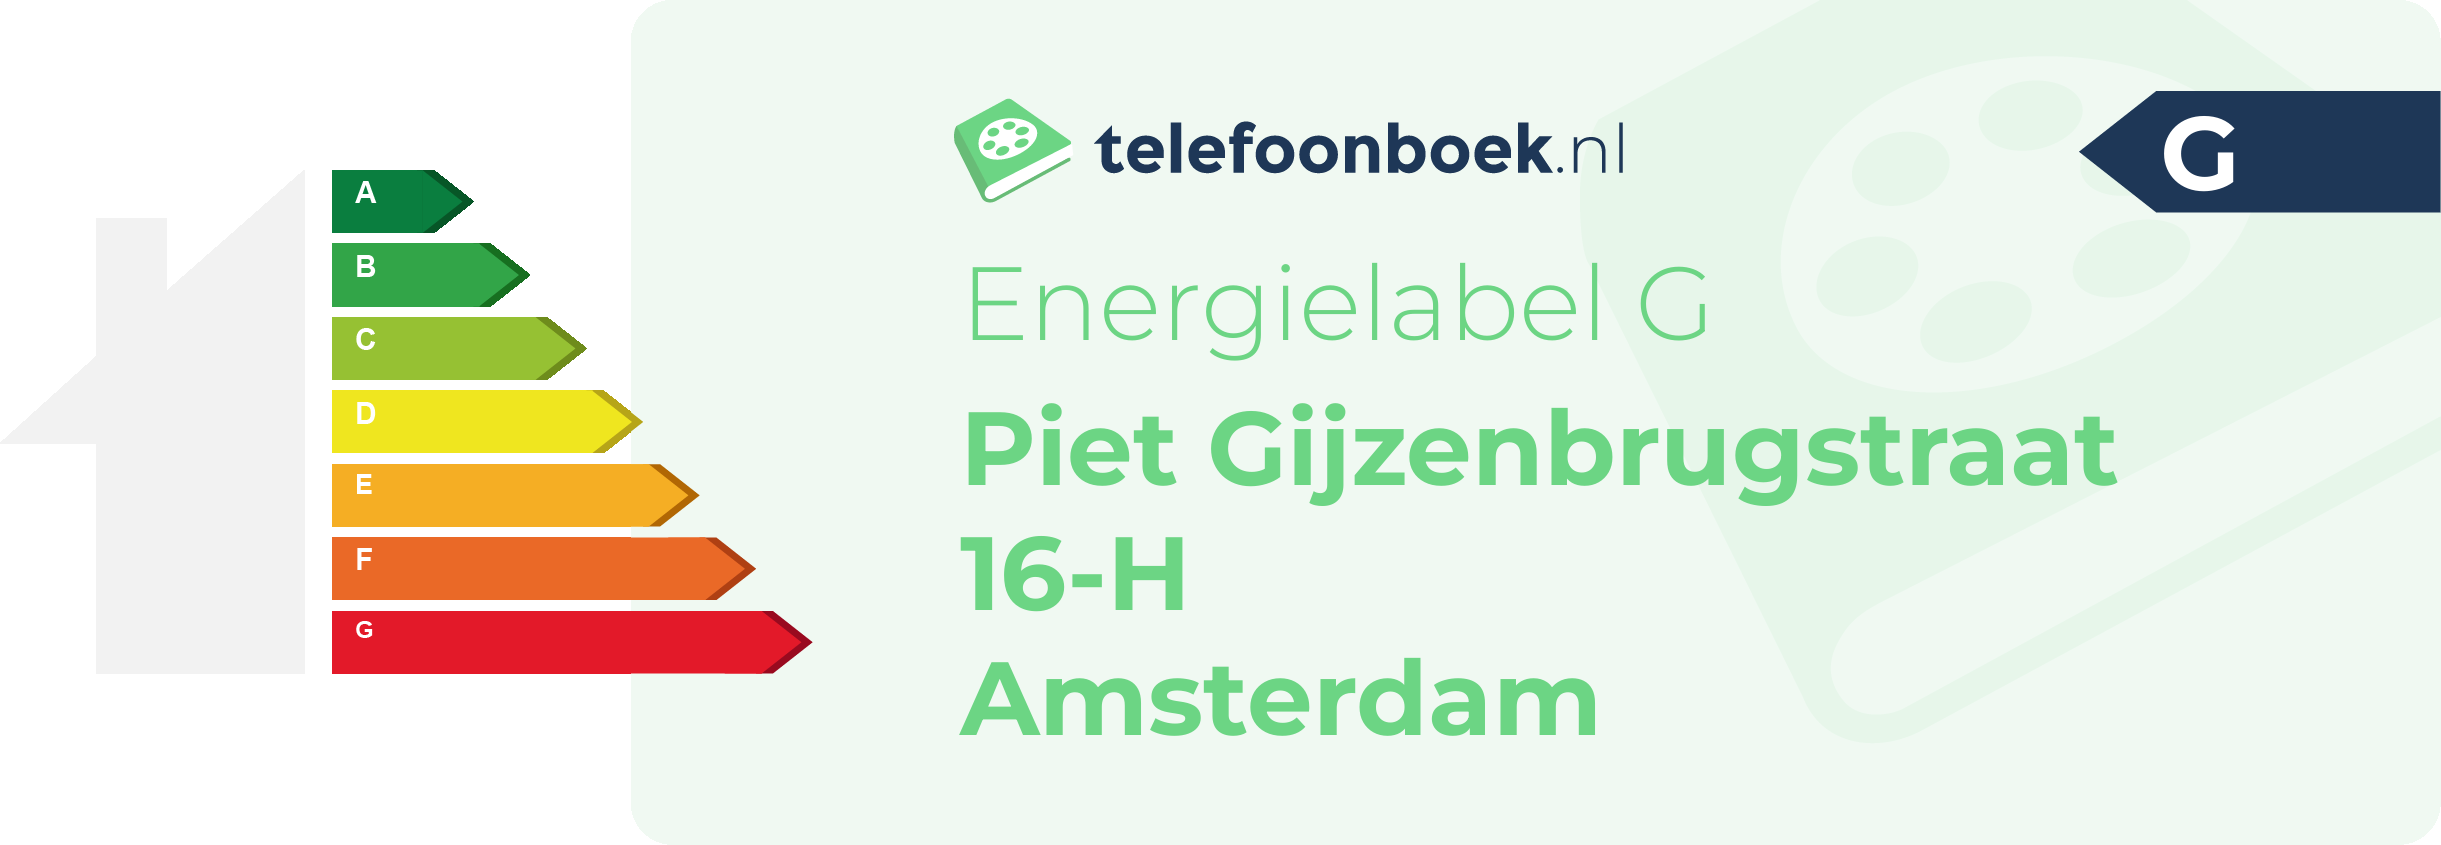 Energielabel Piet Gijzenbrugstraat 16-H Amsterdam